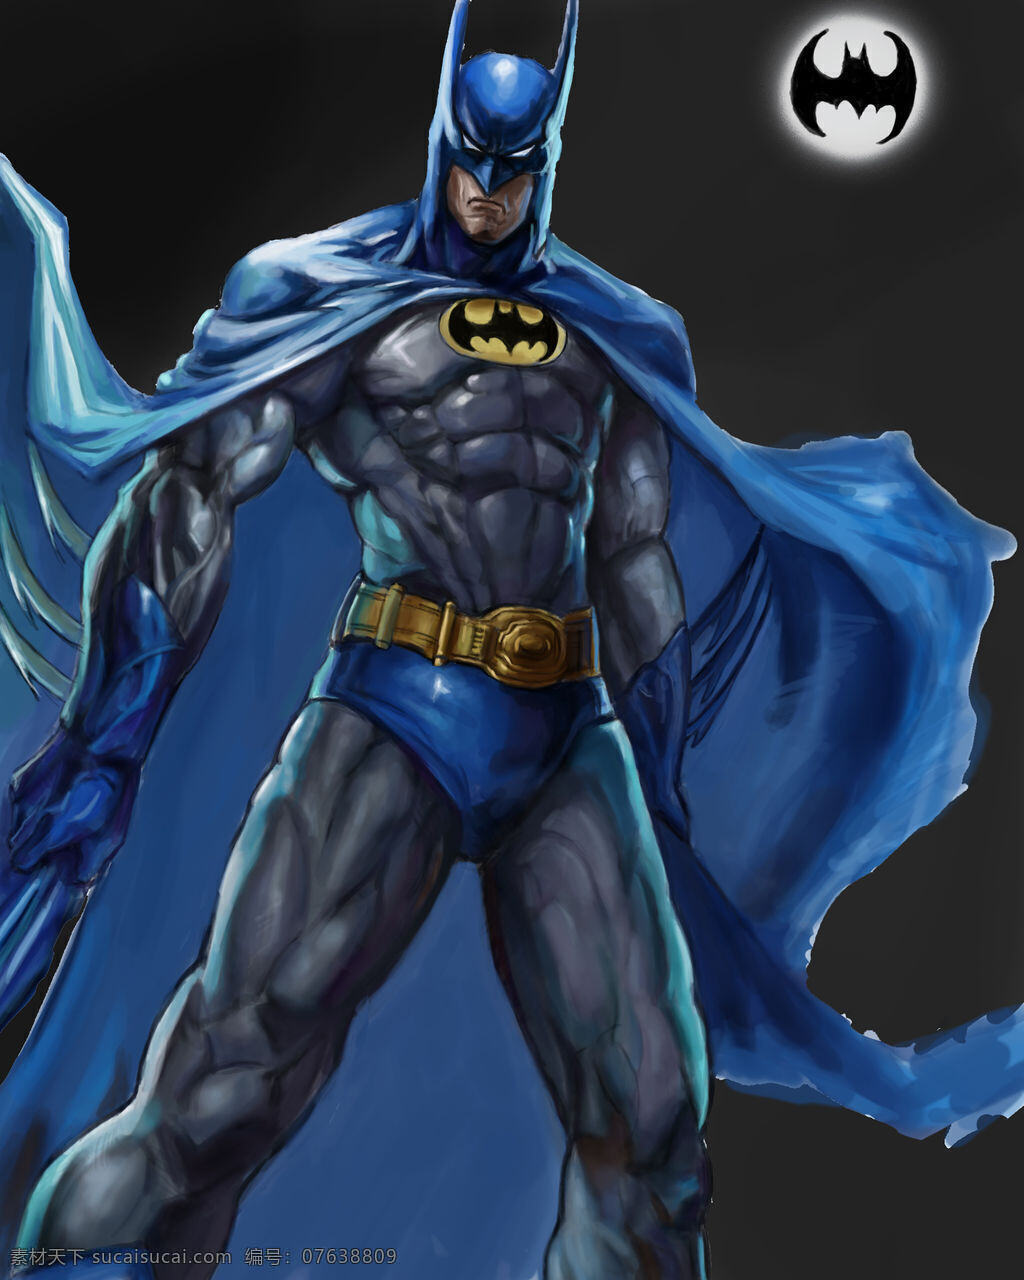 蝙蝠侠 batman 动漫 动漫人物 动漫动画